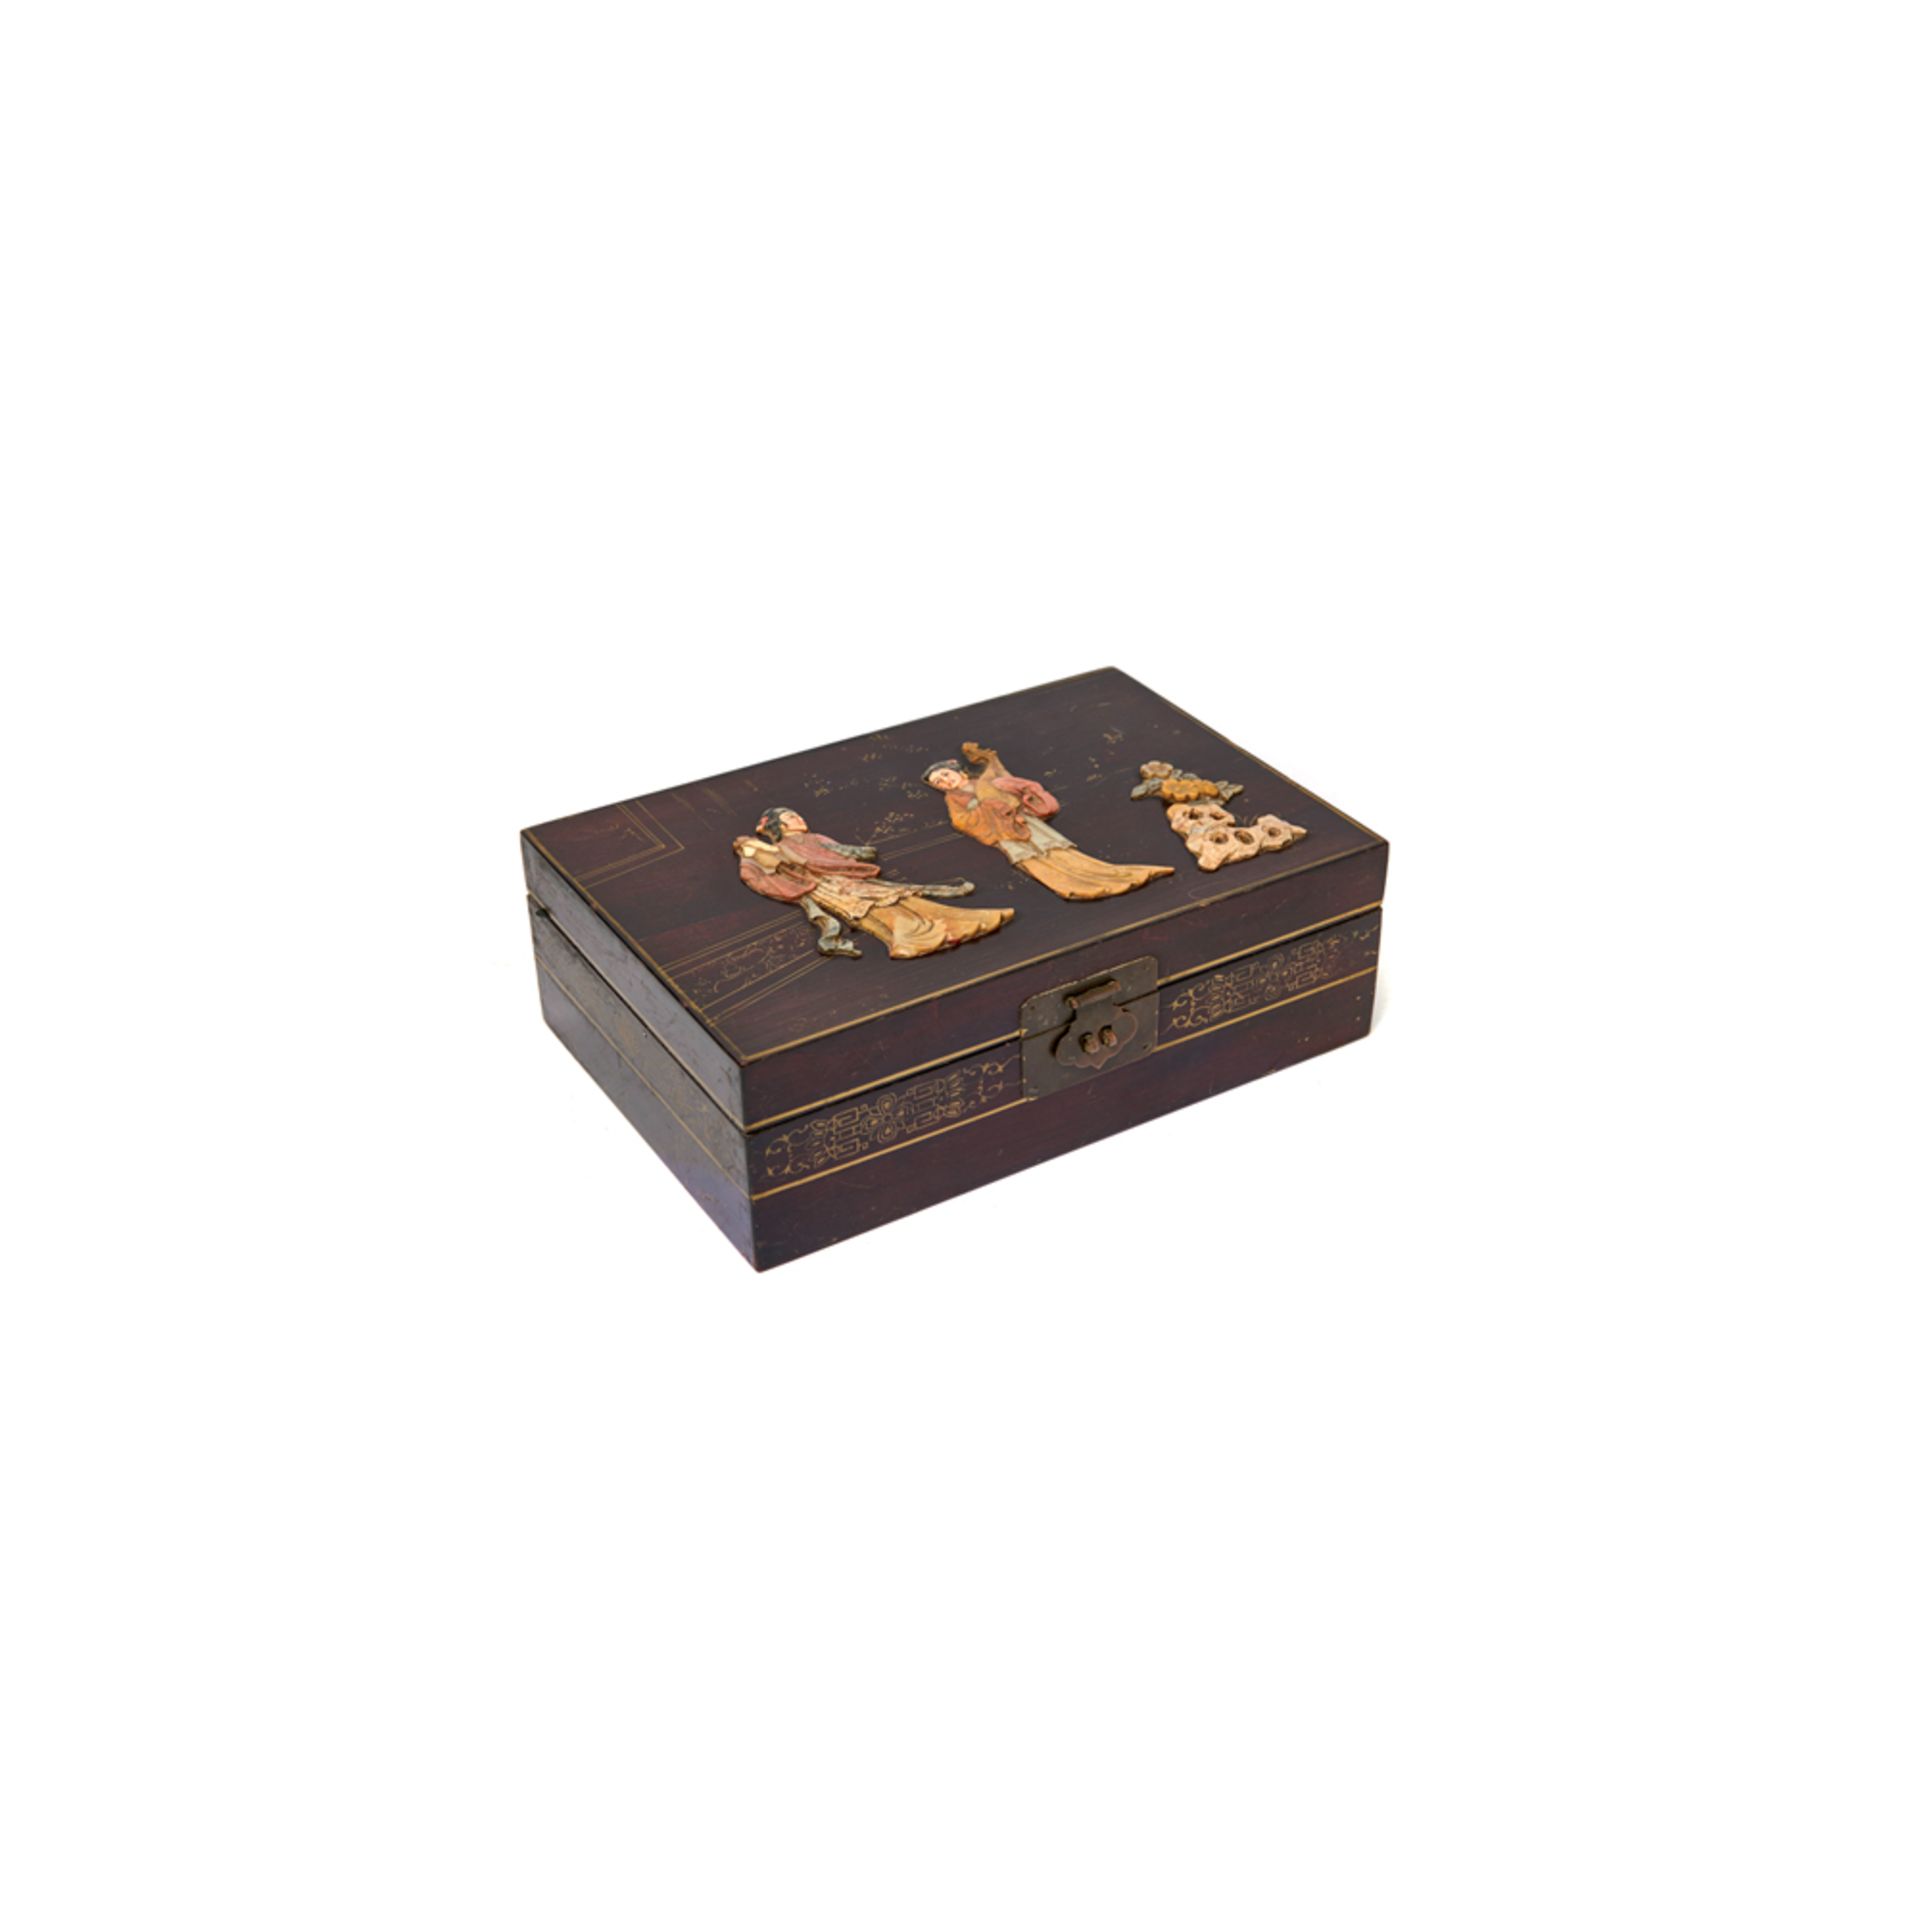 Caja joyero china en madera de palisandro.